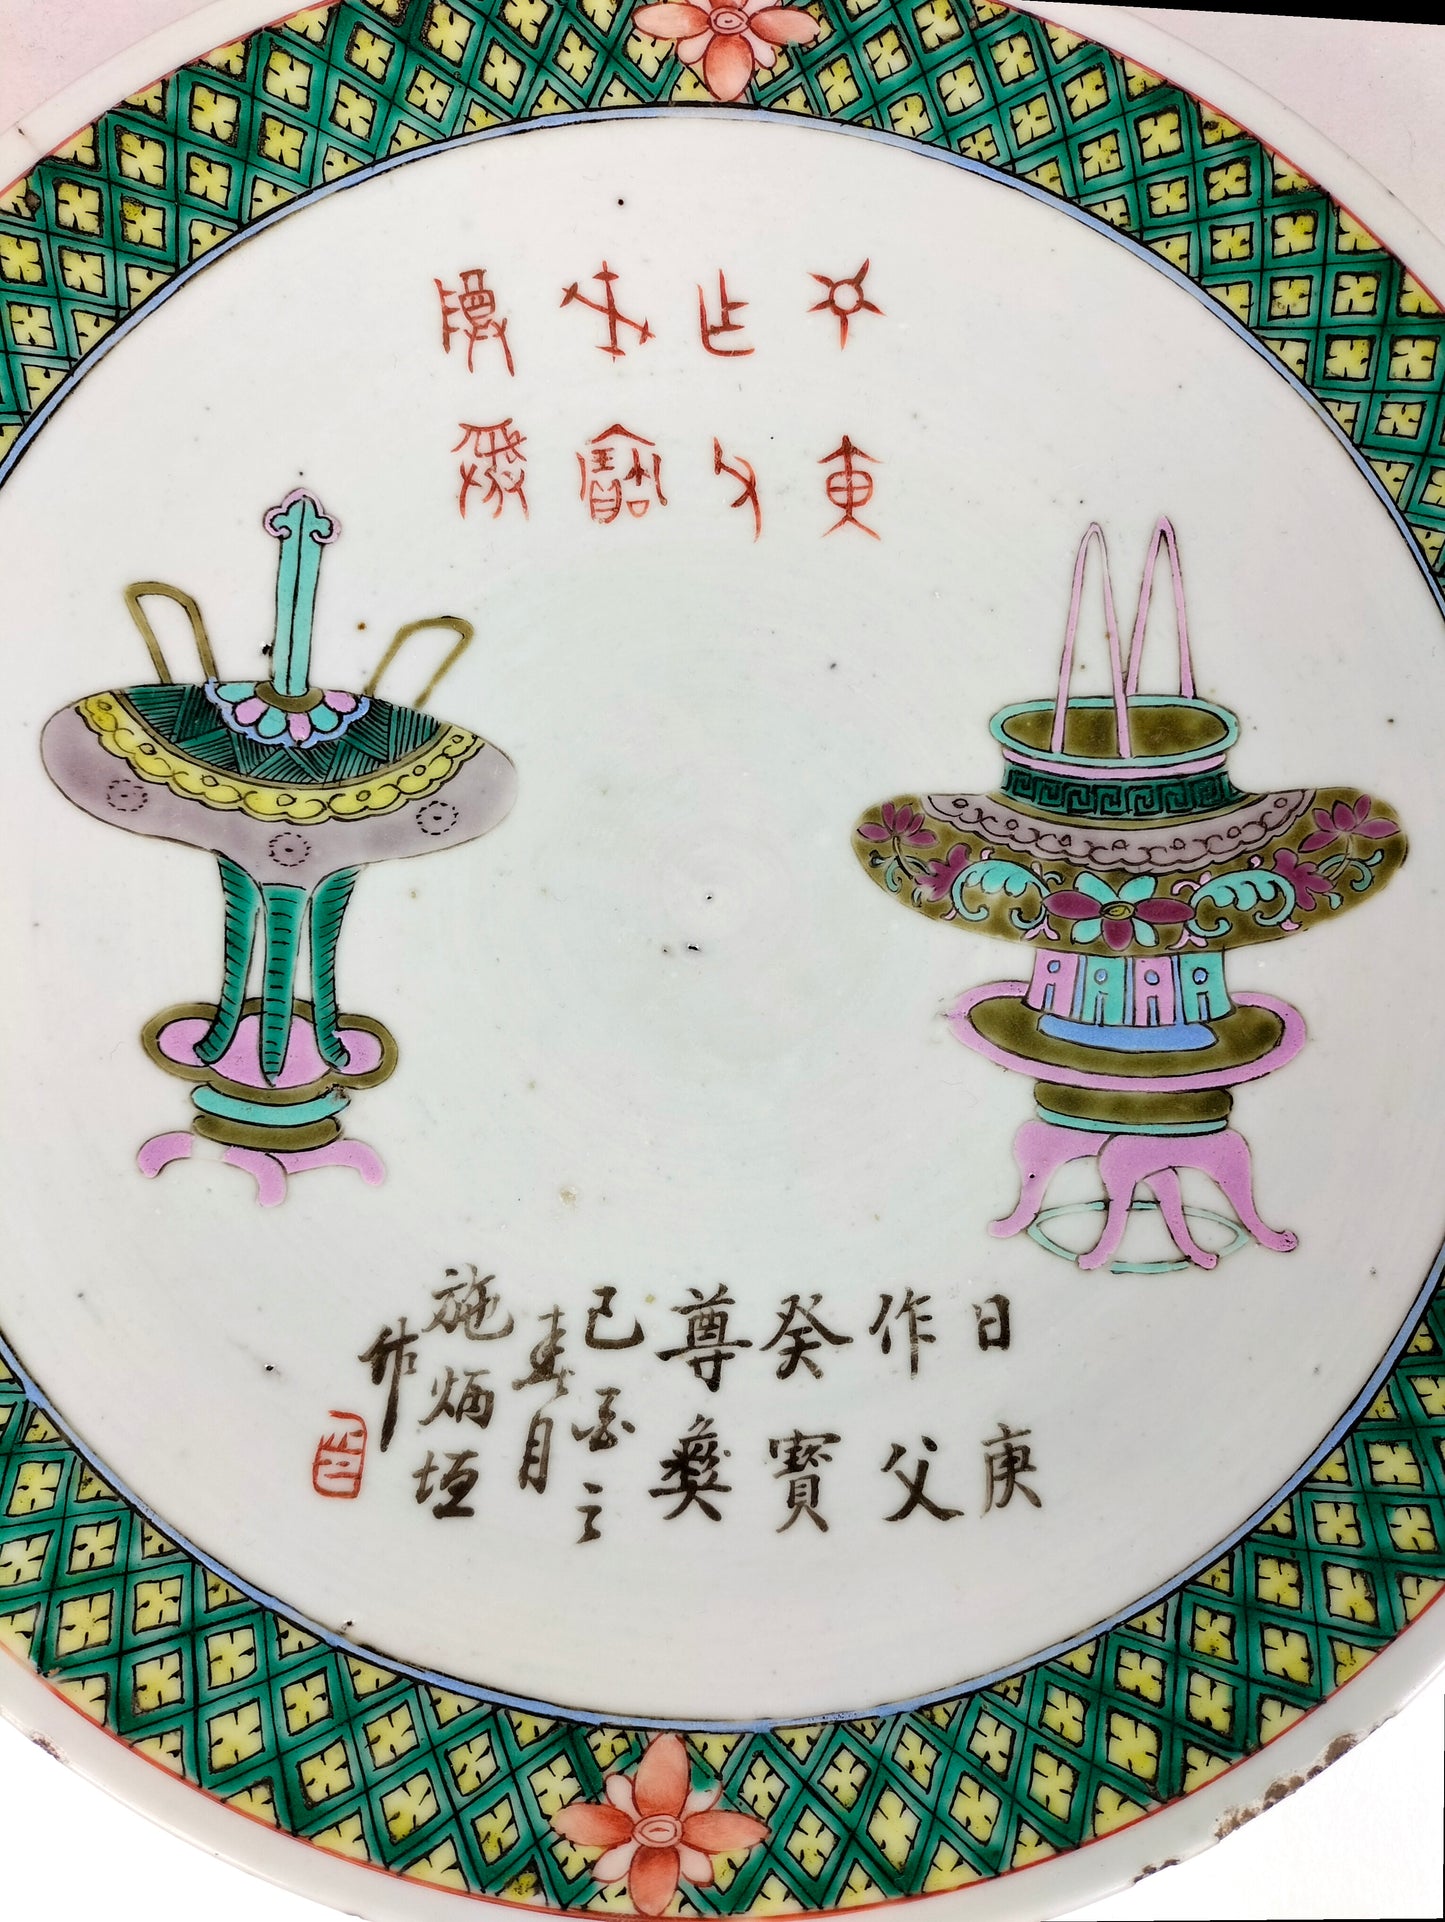 Grande prato chinês antigo decorado com antiguidades // Dinastia Qing - século XIX